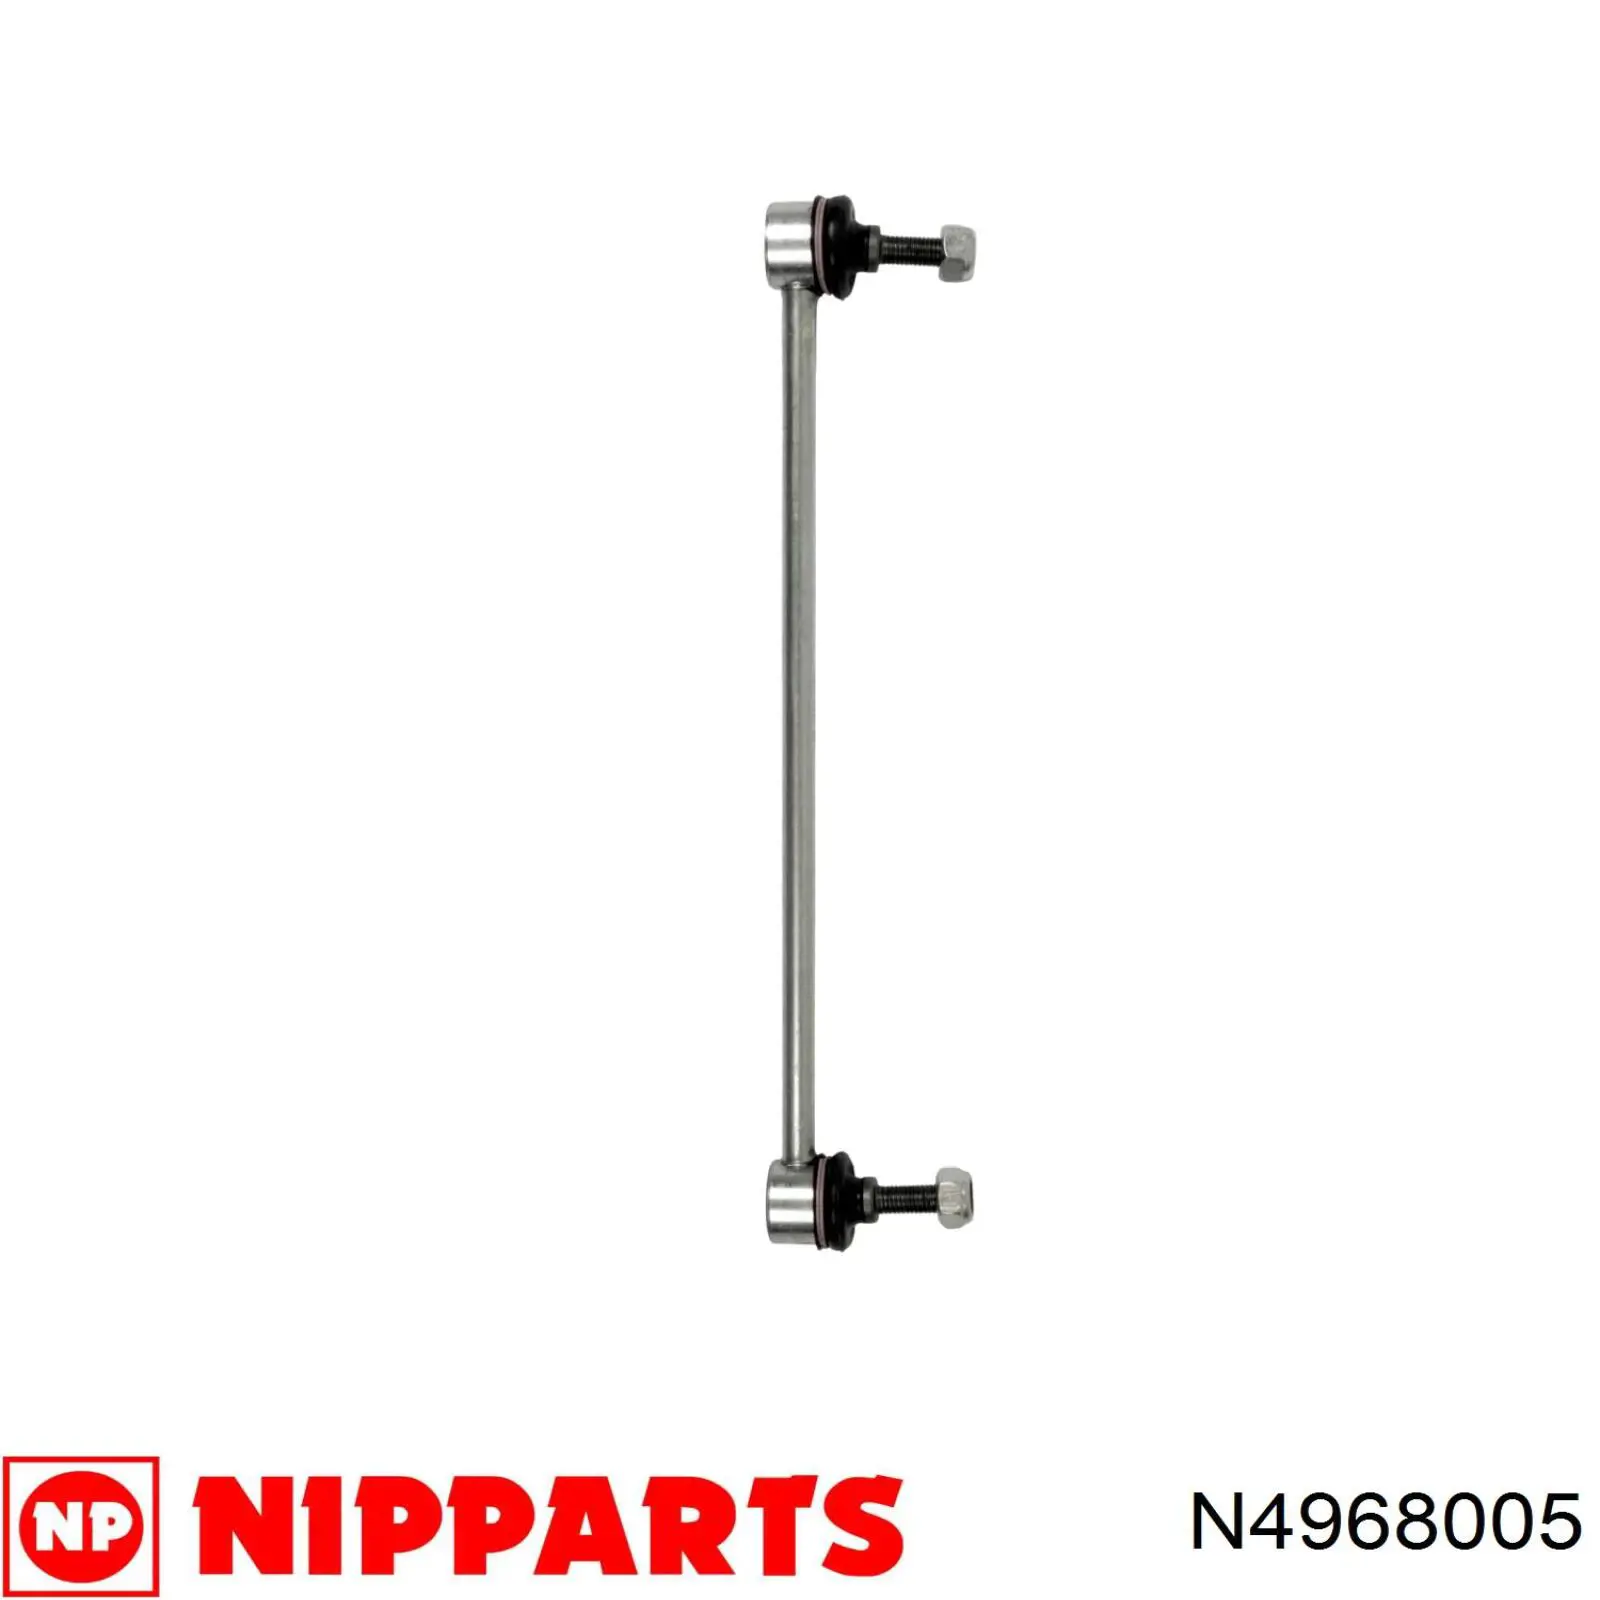 N4968005 Nipparts soporte de barra estabilizadora delantera